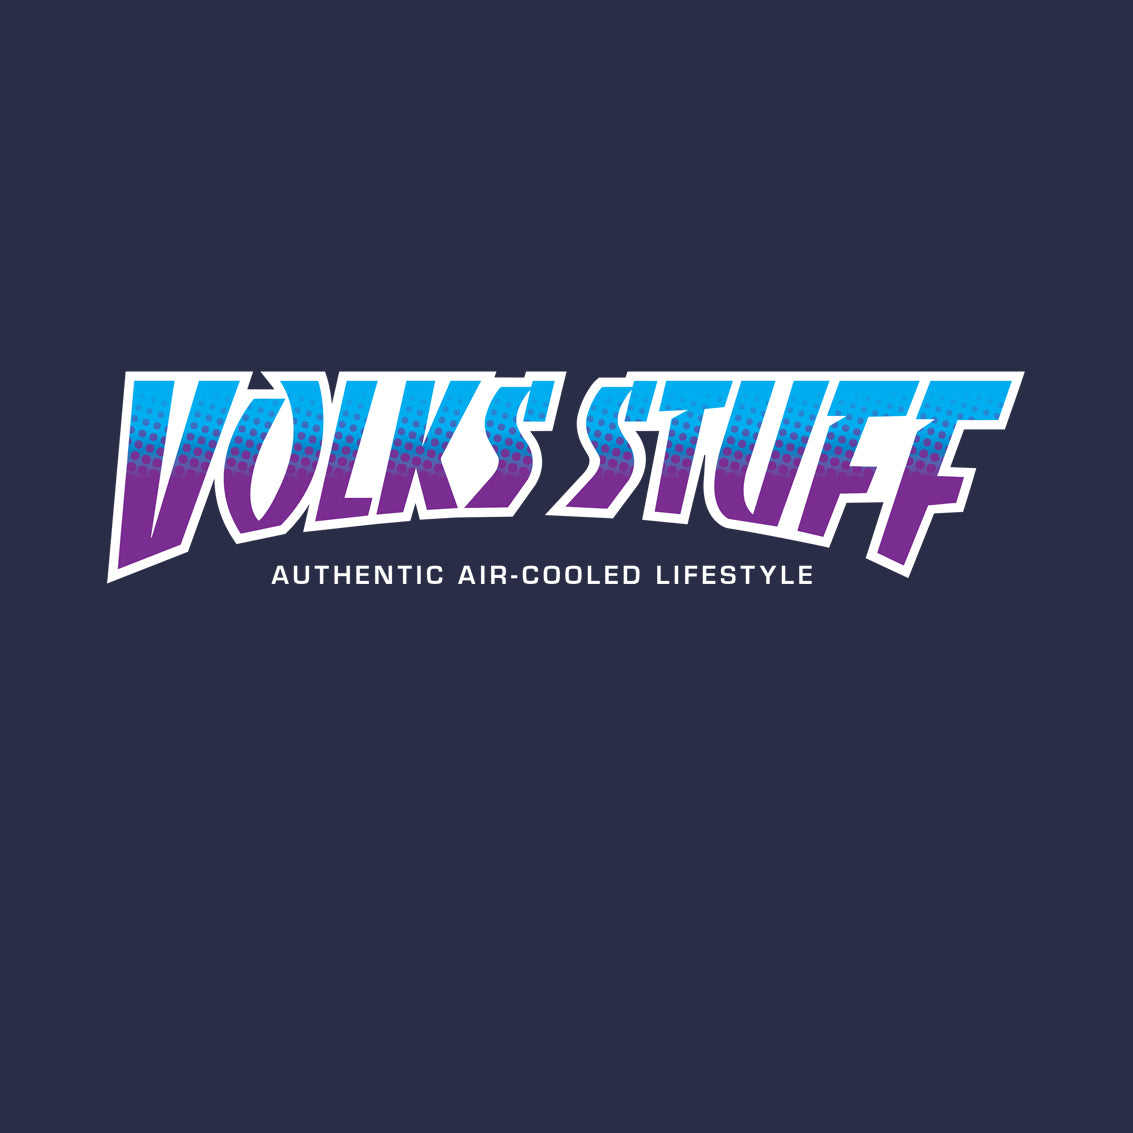 Volks Stuff Retro Rad T-shirt